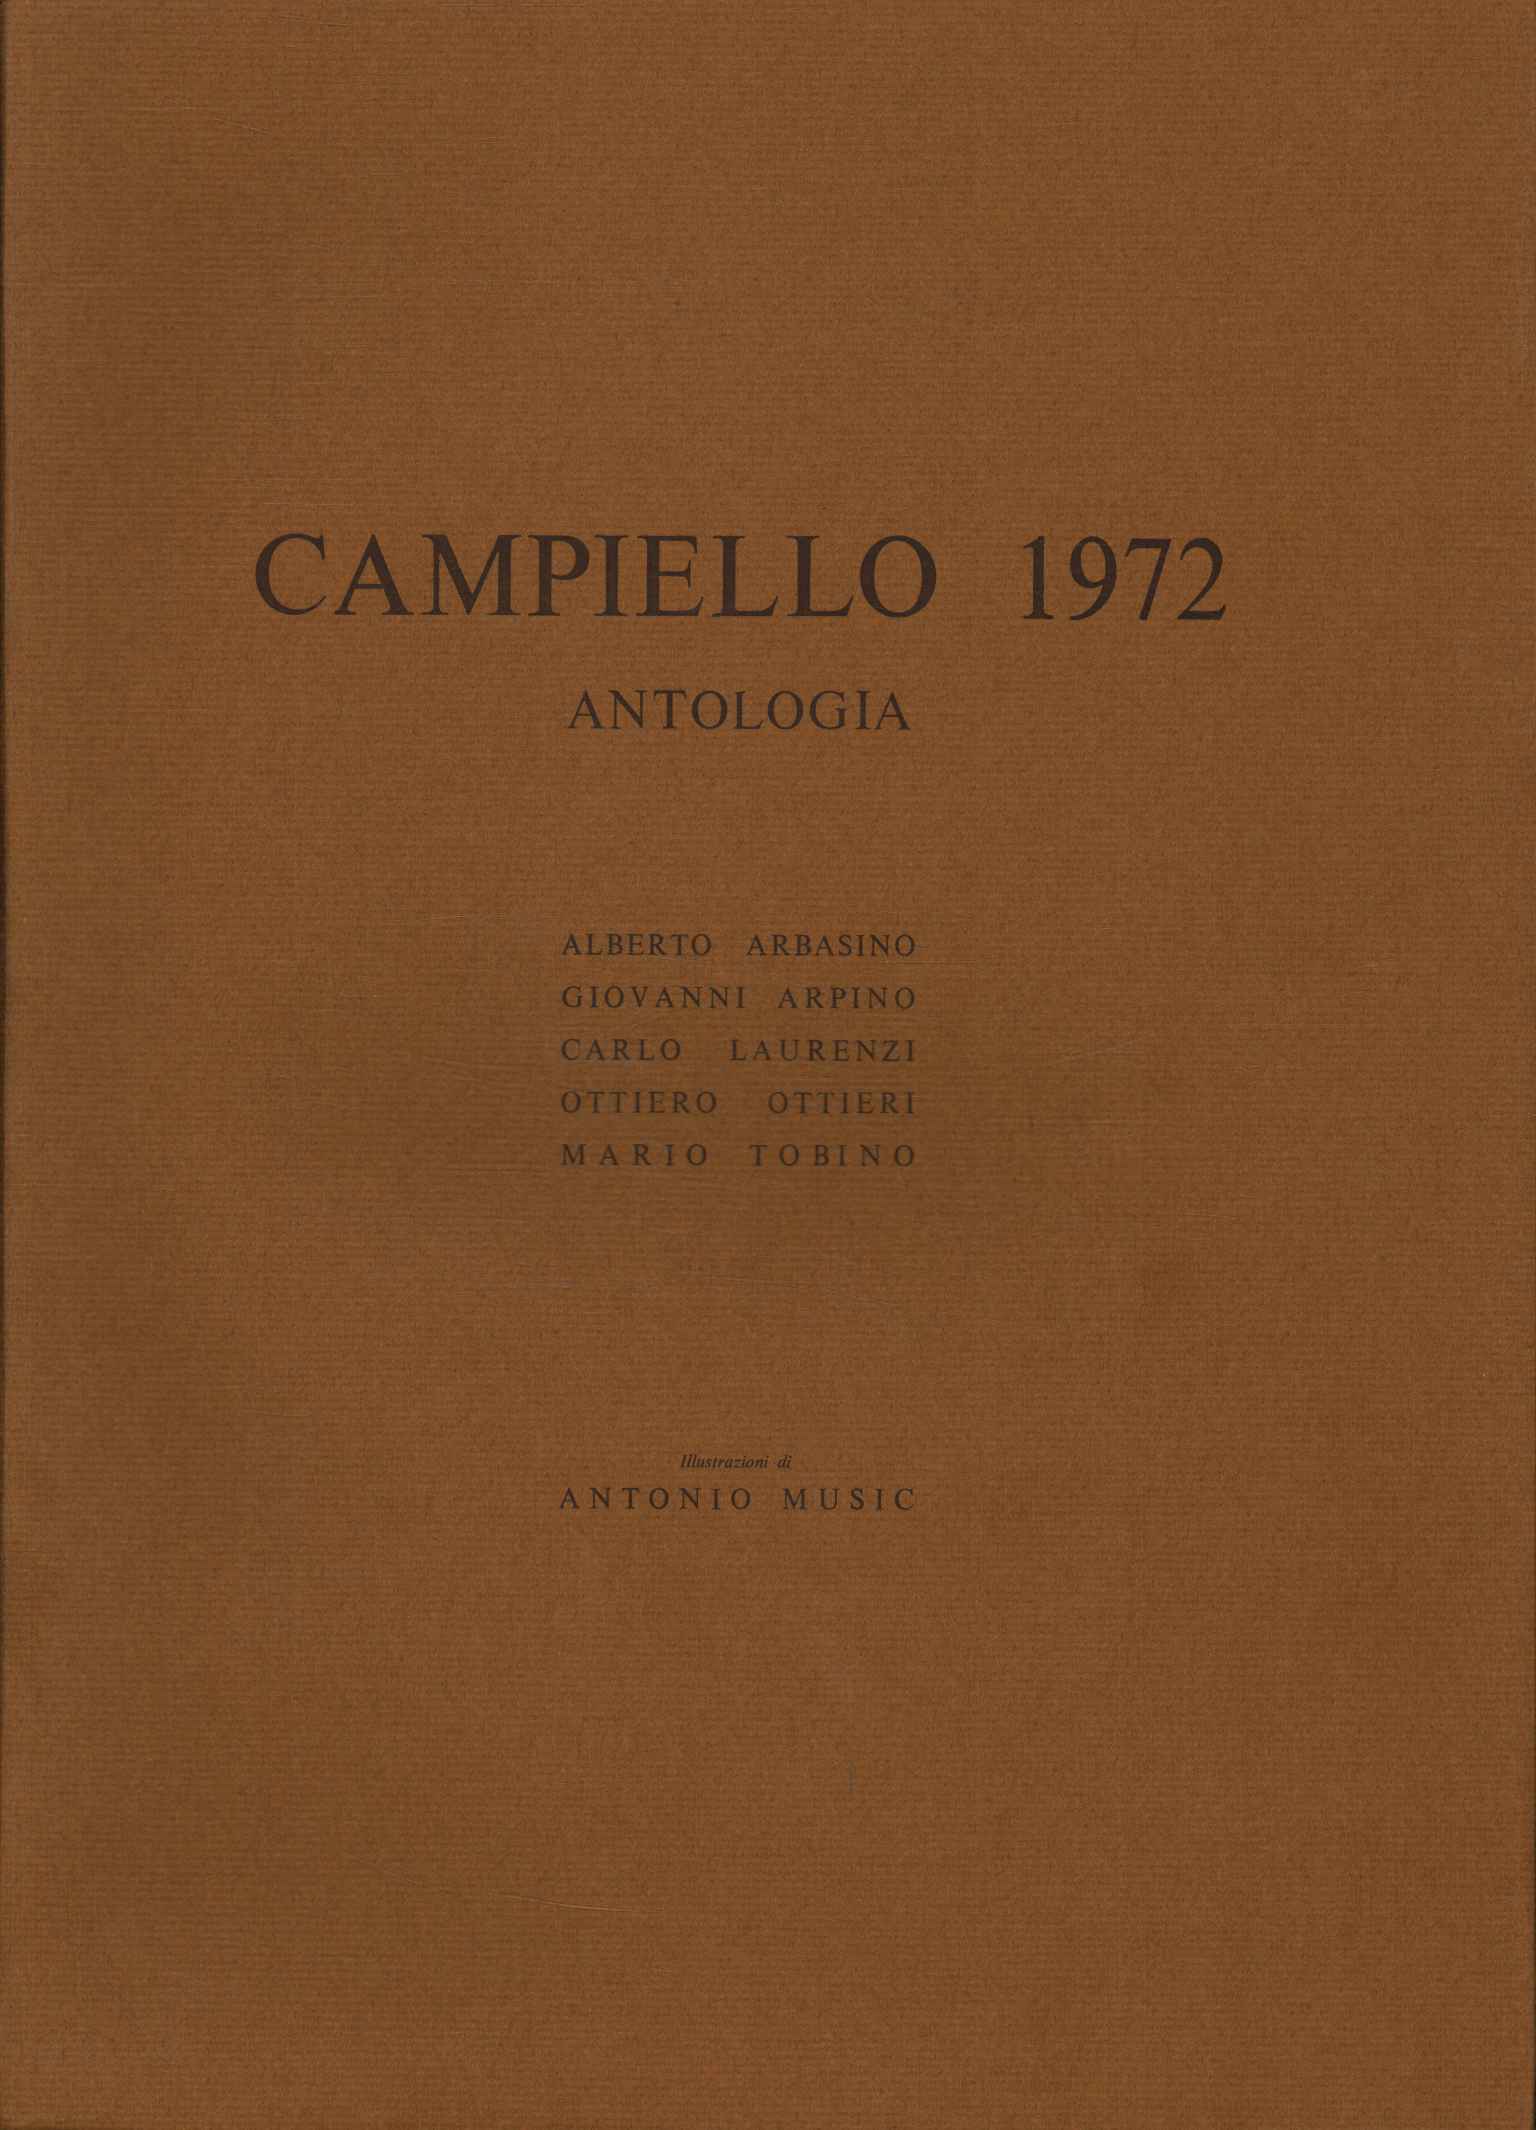 Antología de Campiello 1972